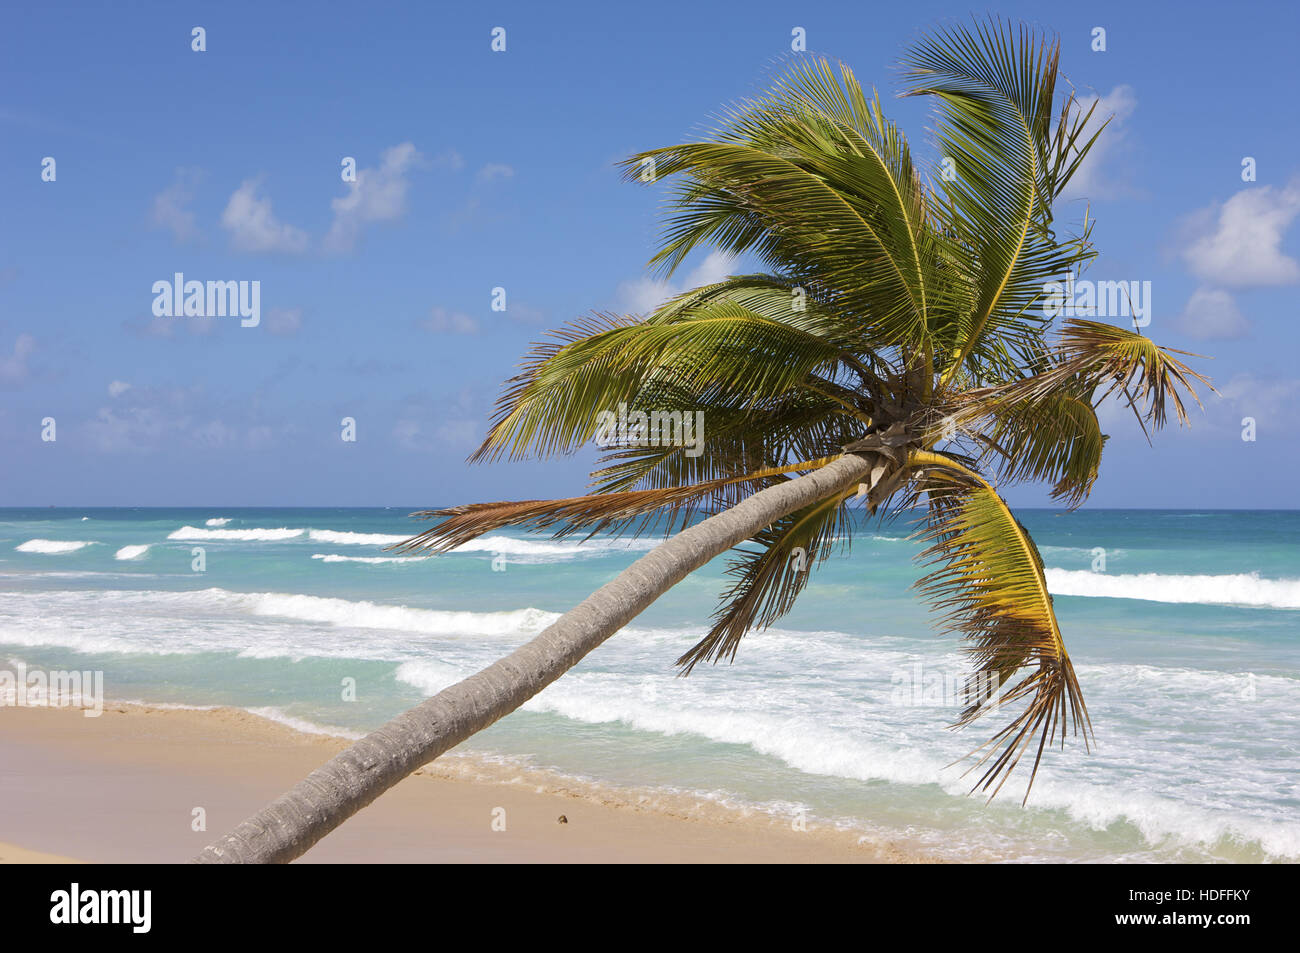 Le cocotier sur la plage, la République dominicaine, Caraïbes Banque D'Images